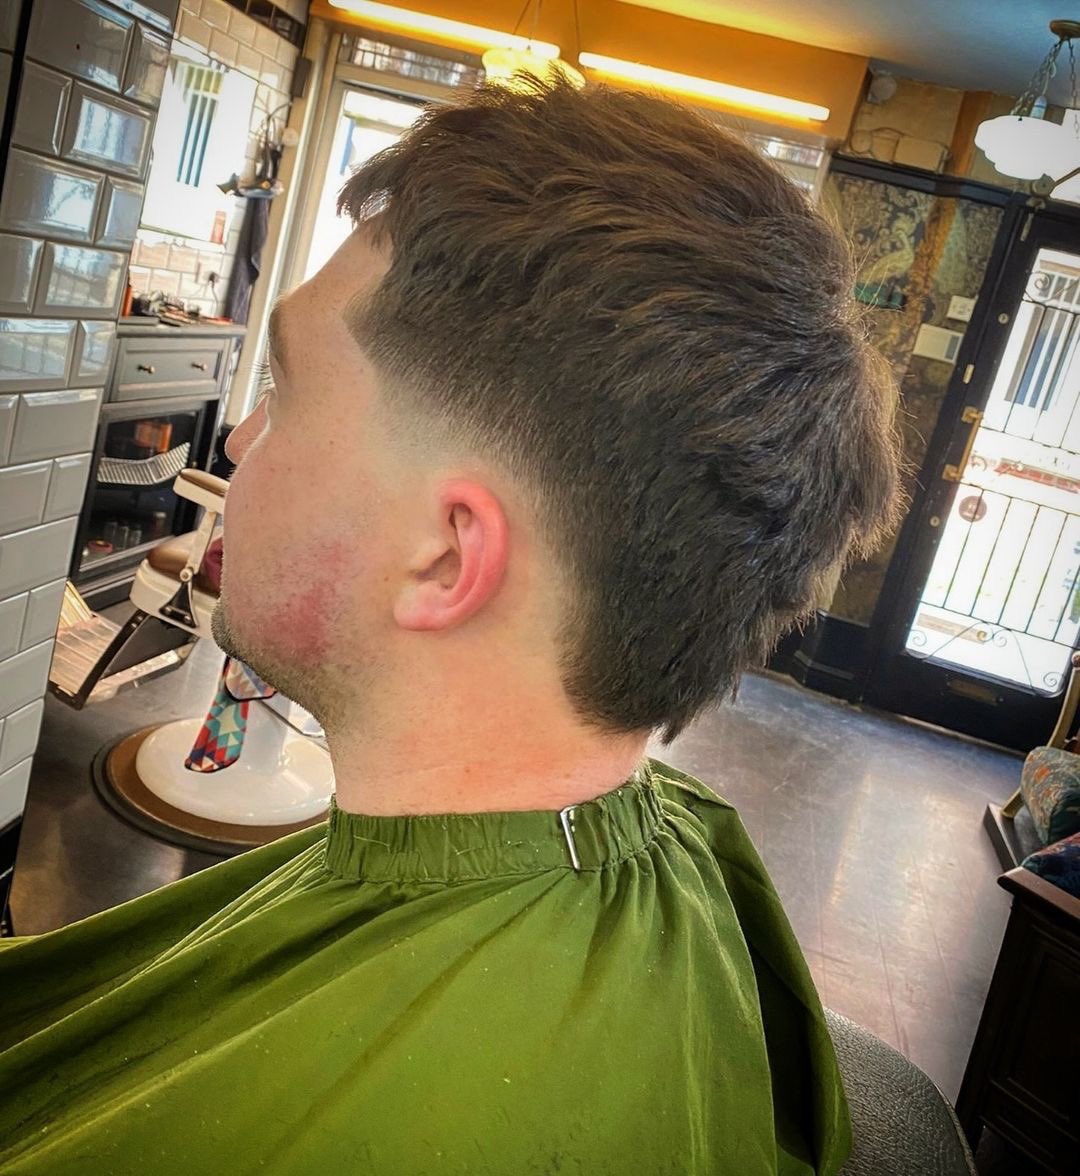 instagram.com/brikbarbershop…
@Hair by Jade at our Byard Lane shop 💈 
@jade.the.barber 

#weekendmood #nottingham #citycenter #nottsbarber #barbershop #booksybarbers #barbershop #saturday #malegrooming #mensgrooming